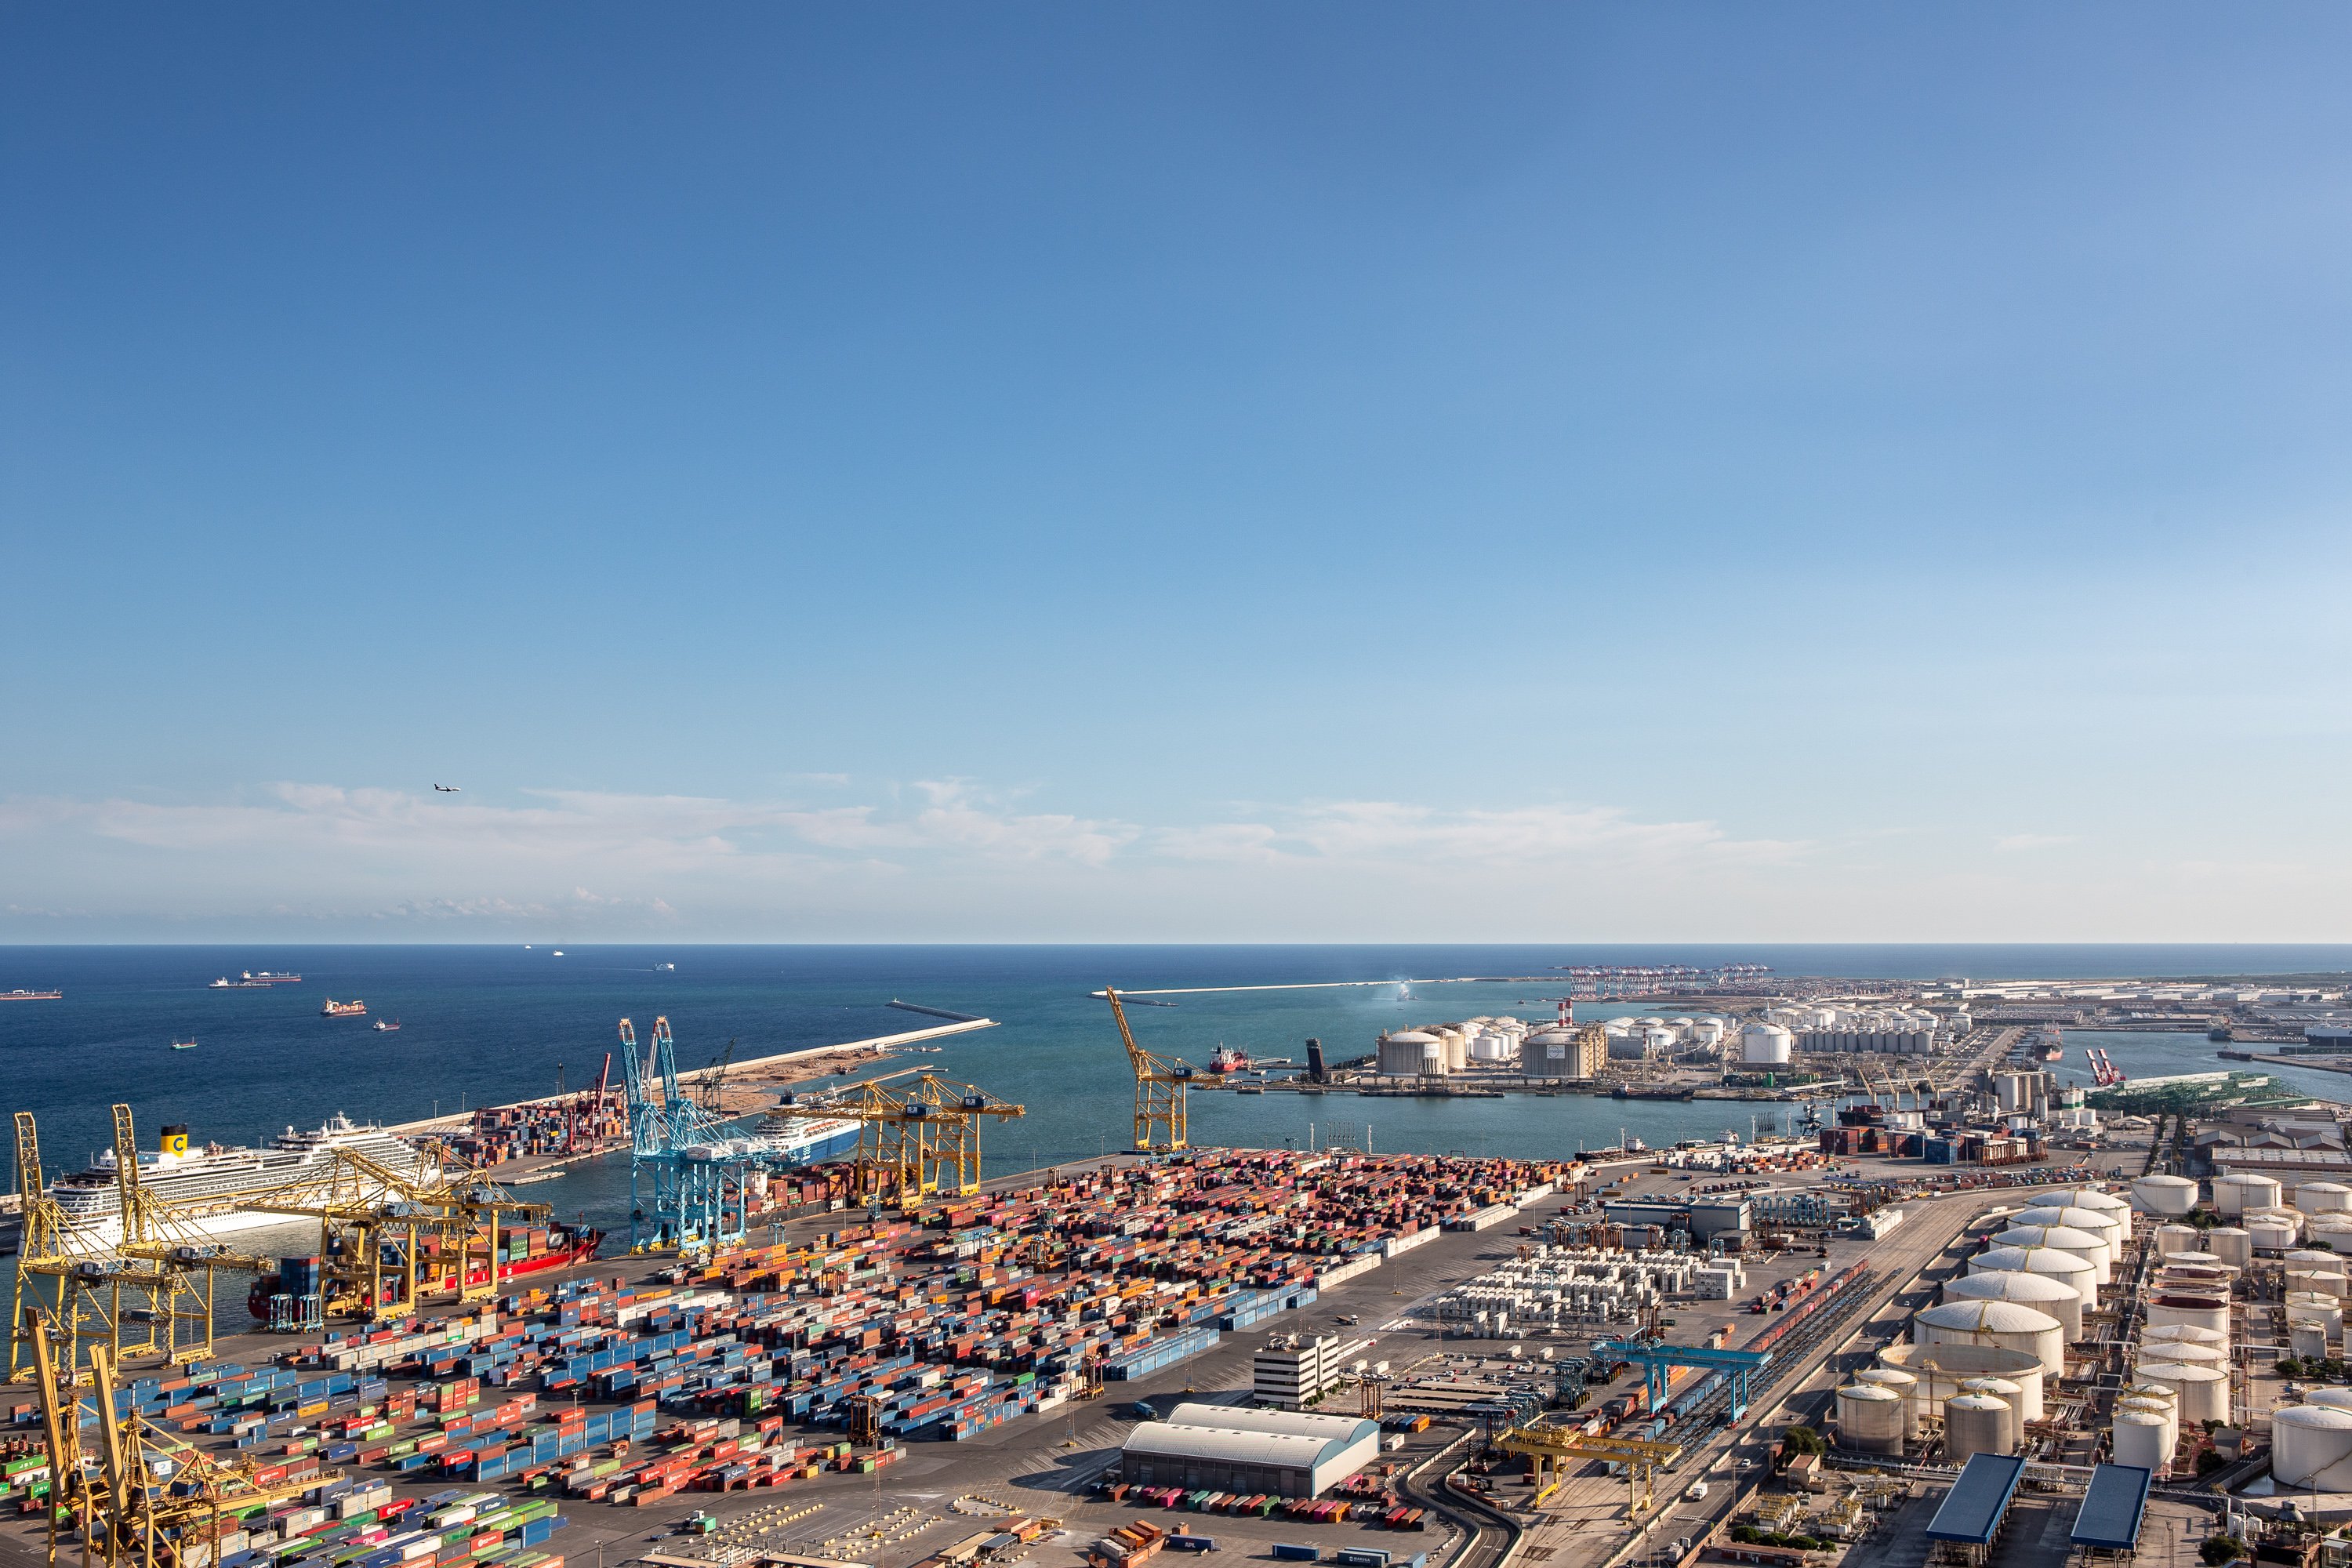 El tráfico de mercancías en el puerto de Barcelona crece un 1,3% hasta octubre